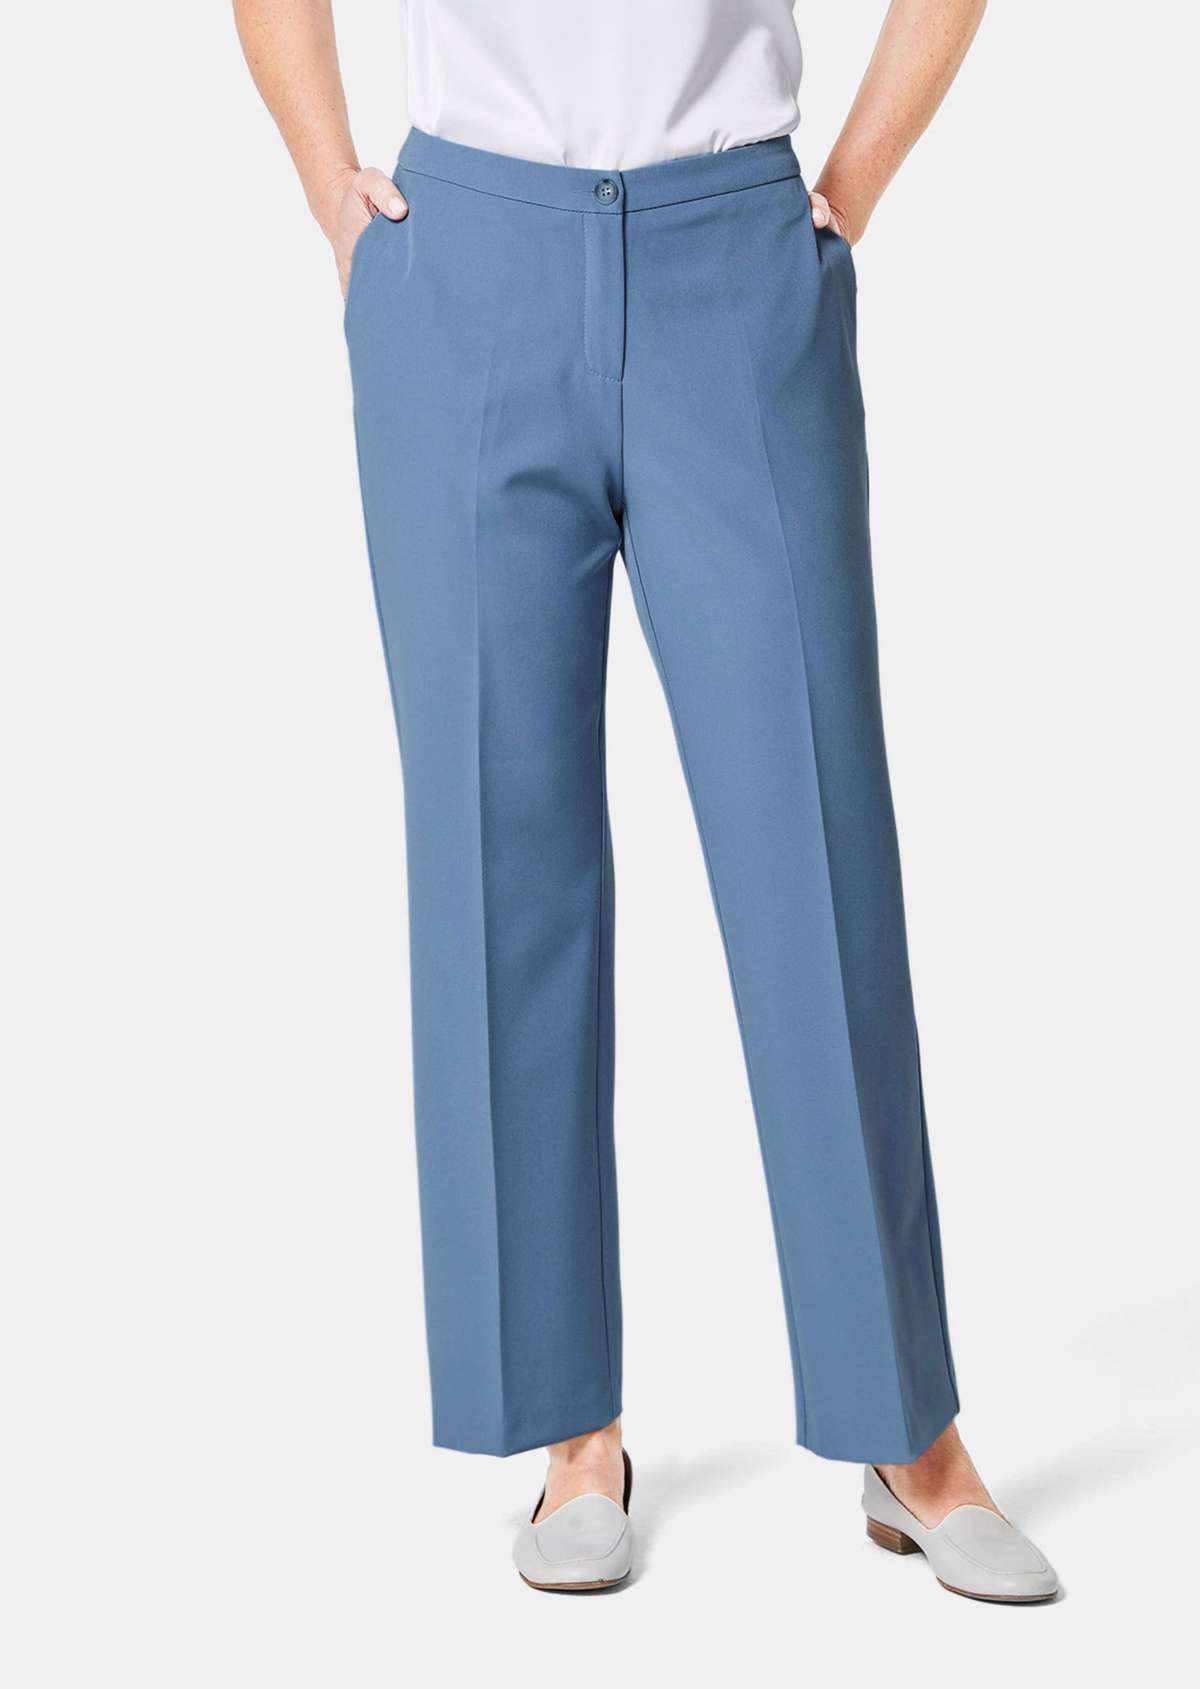 Элегантные брюки со слегка более широкими штанинами.